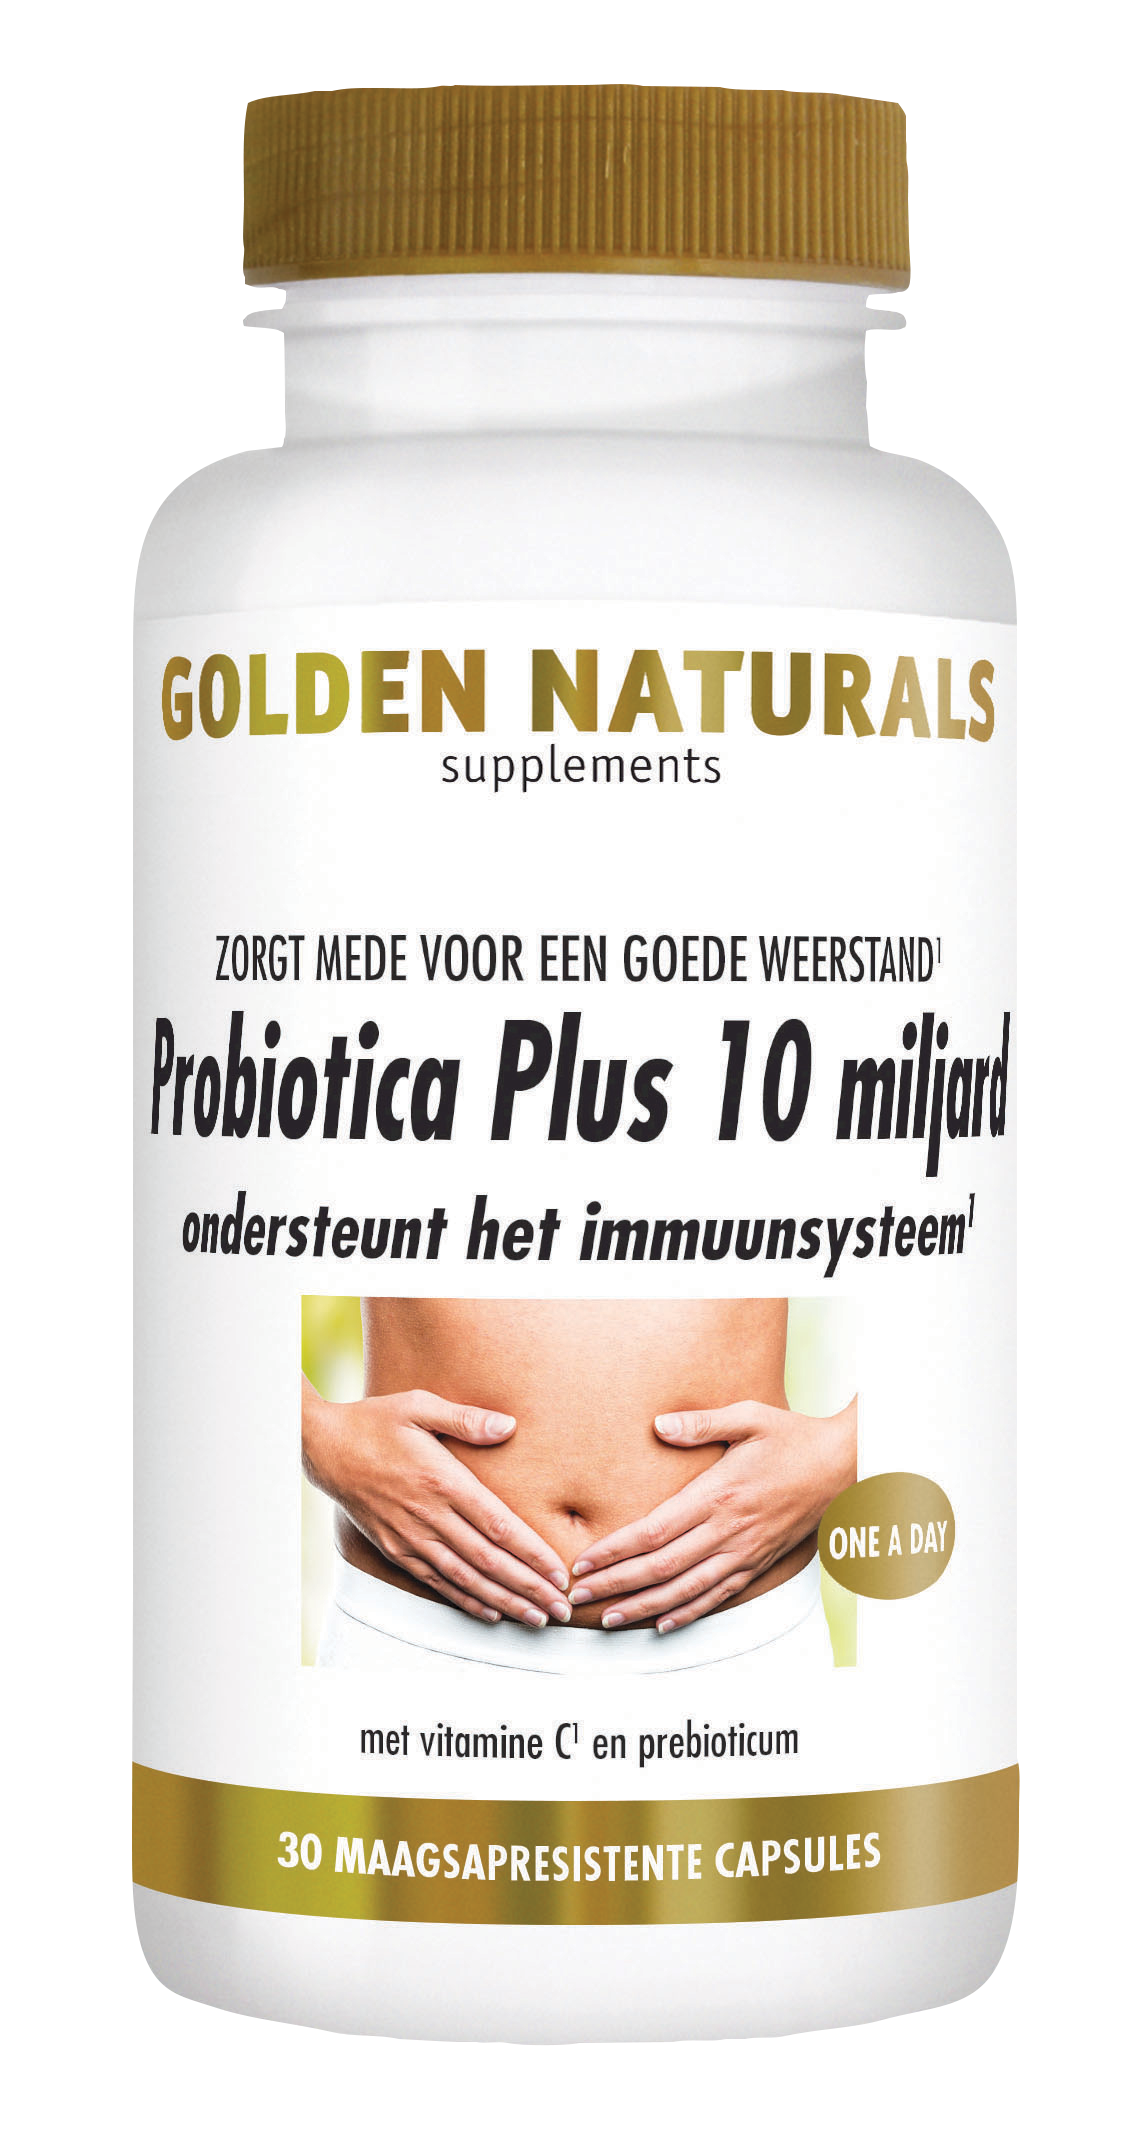 Golden Naturals Probiotica Plus 10 miljard (30 veganistische maagsapre